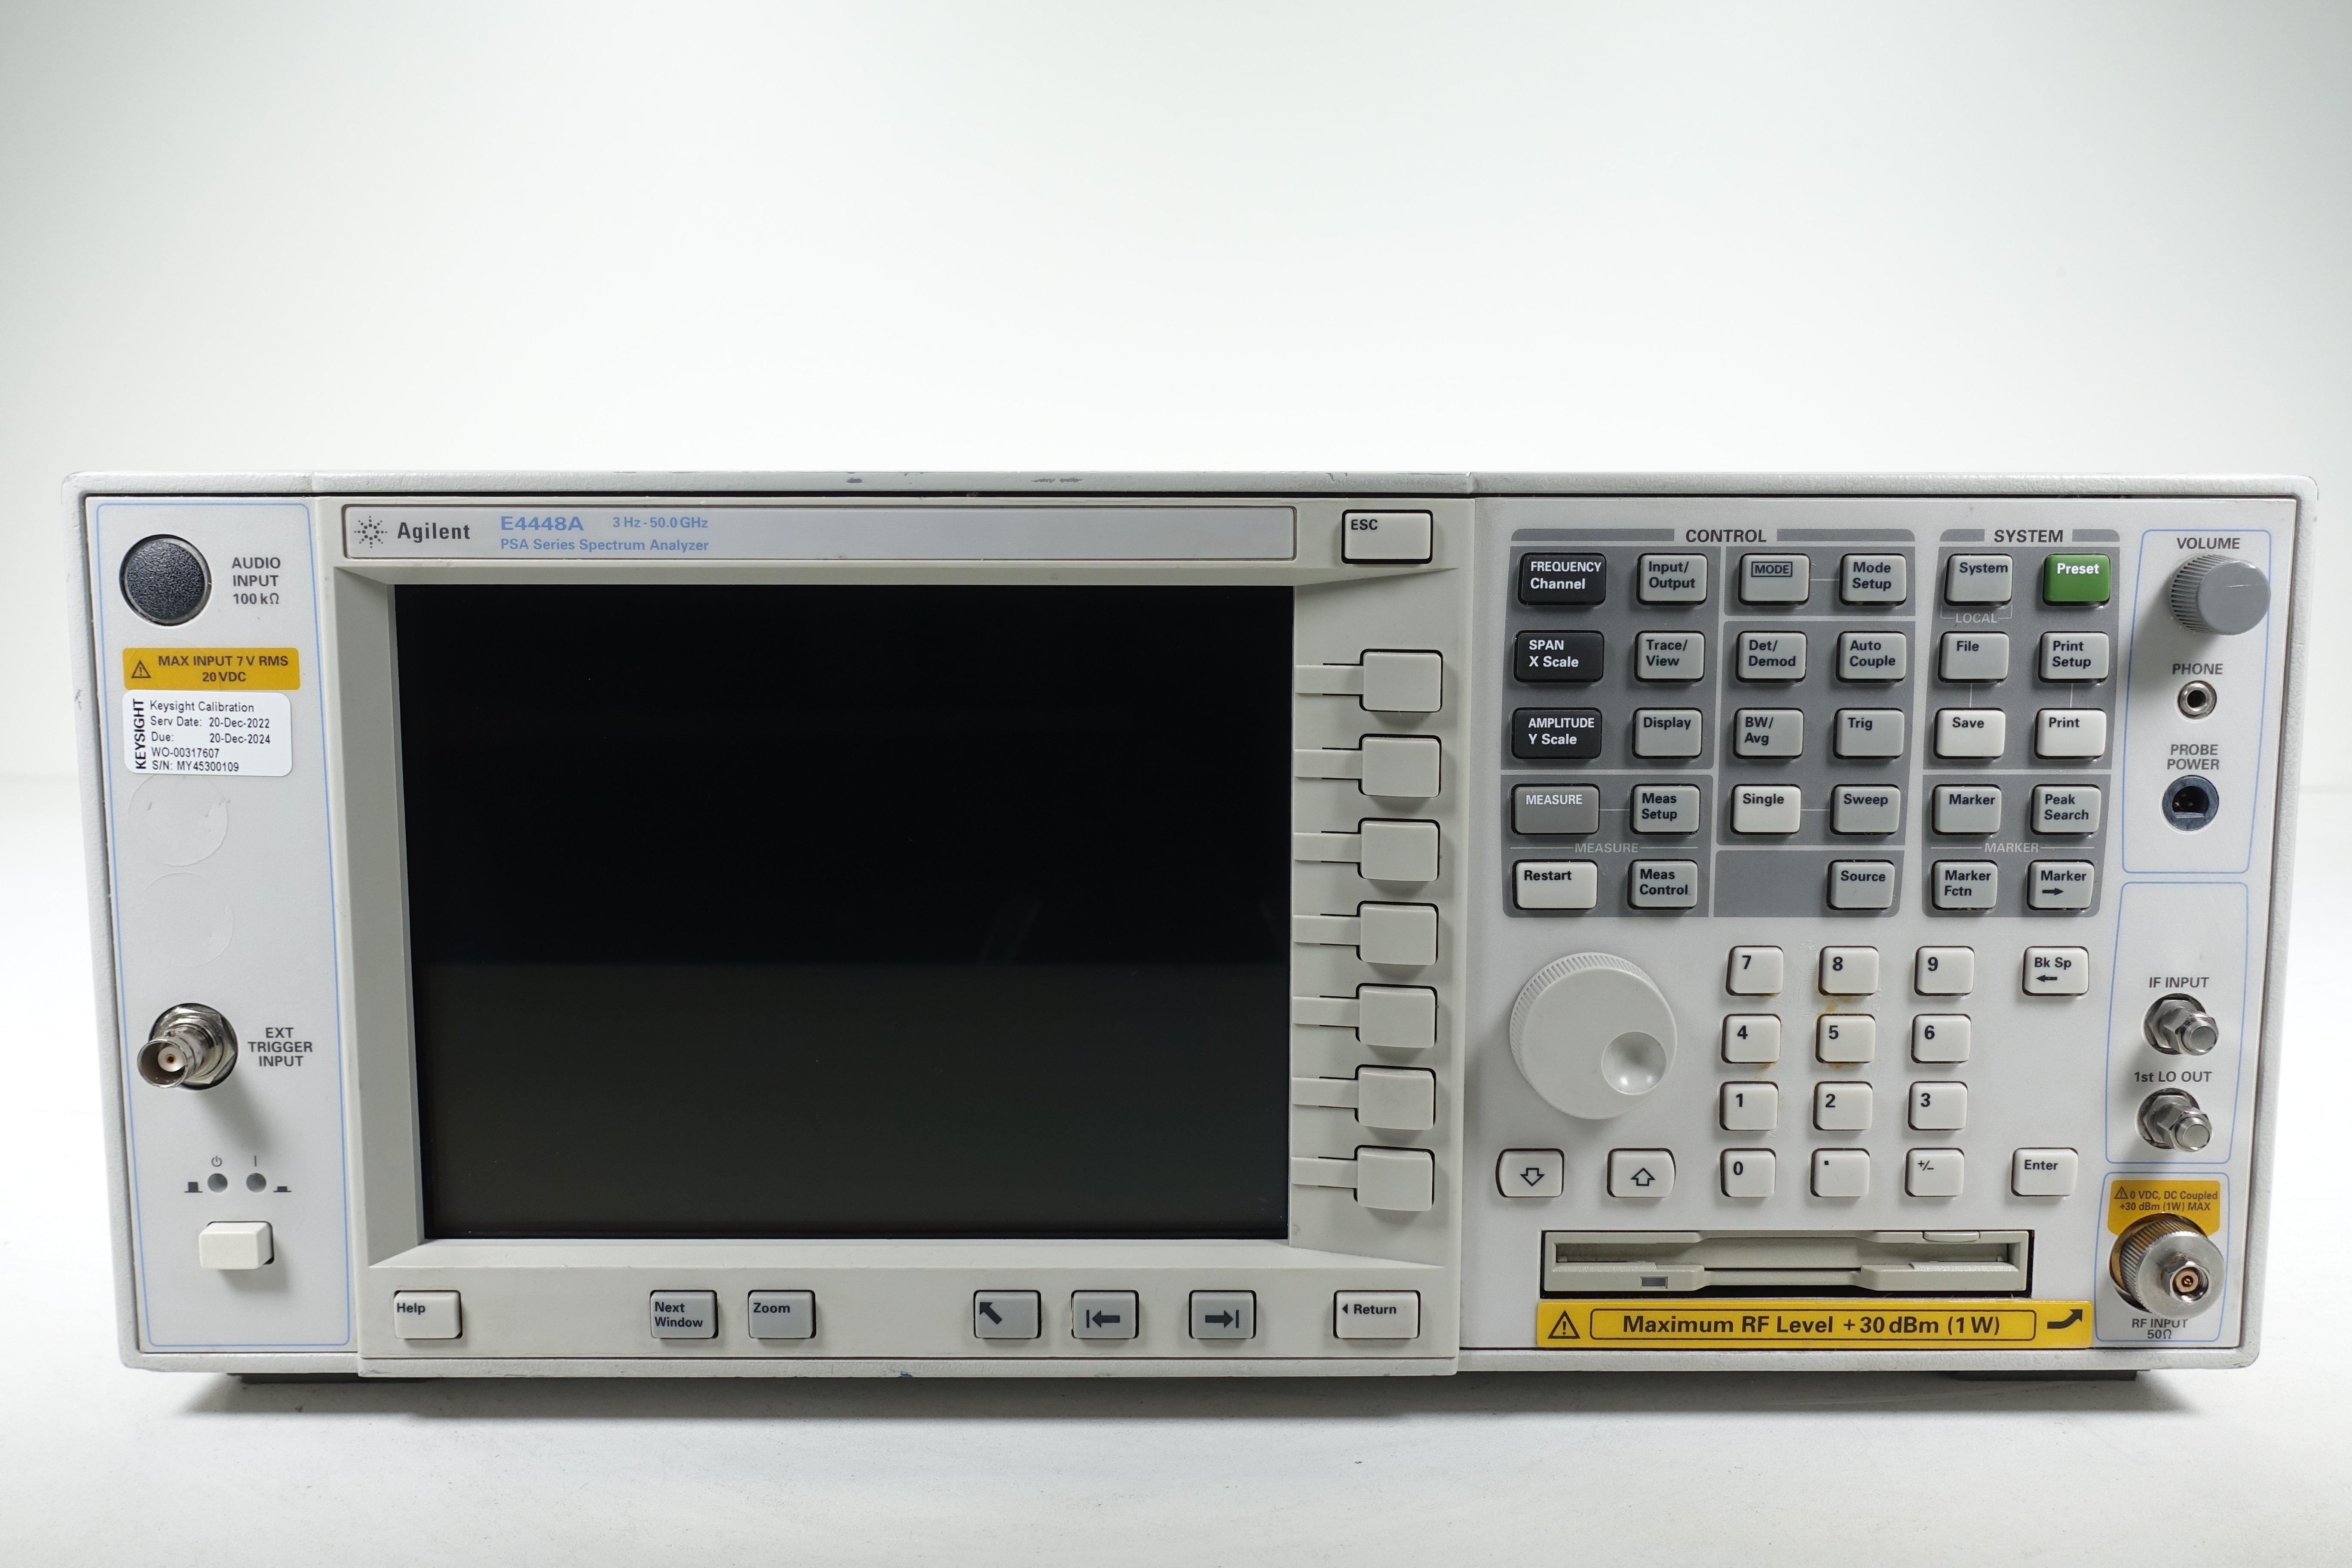 Keysight E4448A PSA Spectrum Analyzer / 3 Hz to 50 GHz